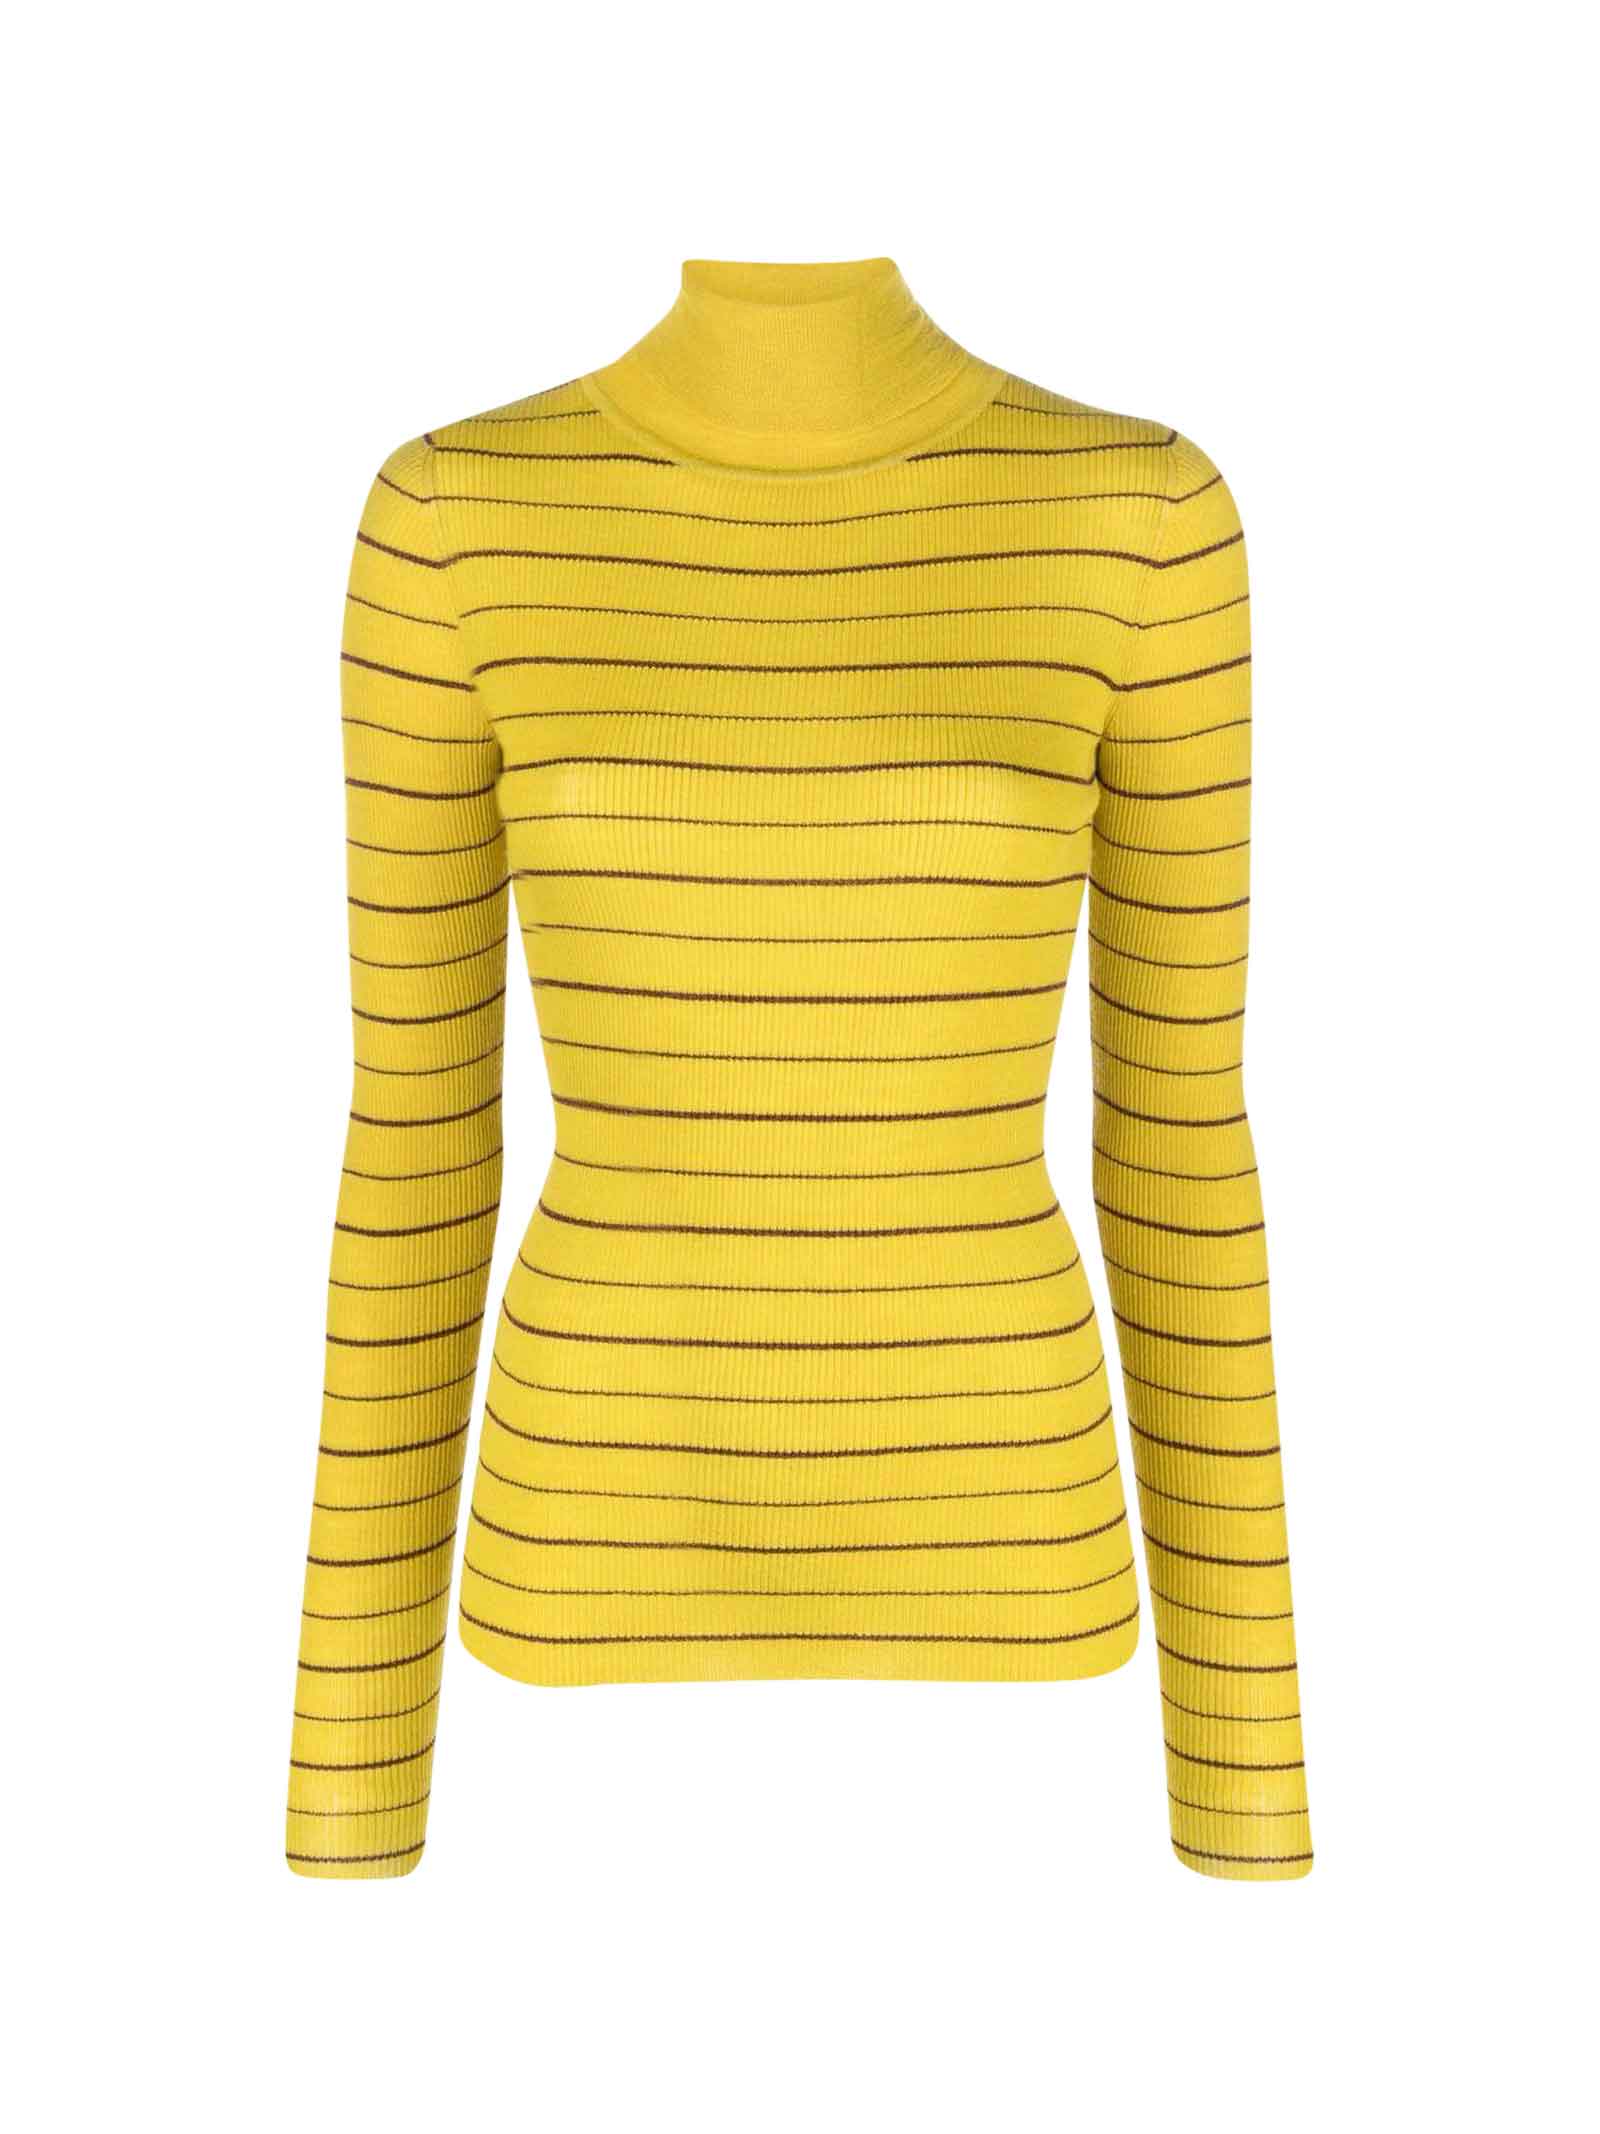 Alysi Yellow Sweater